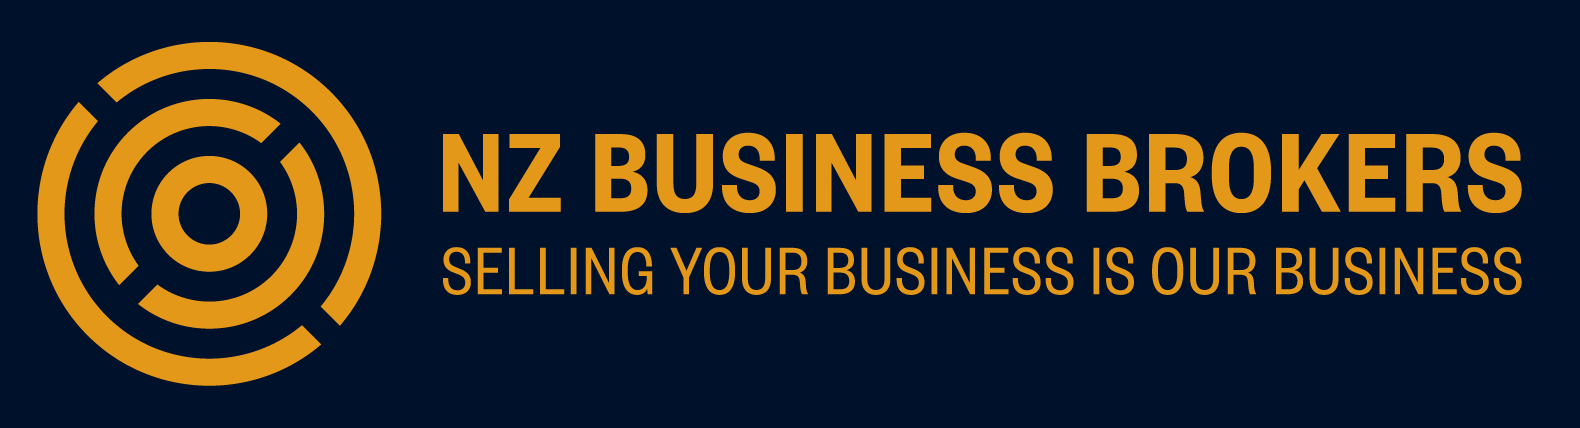 NZ Business Brokers - logo